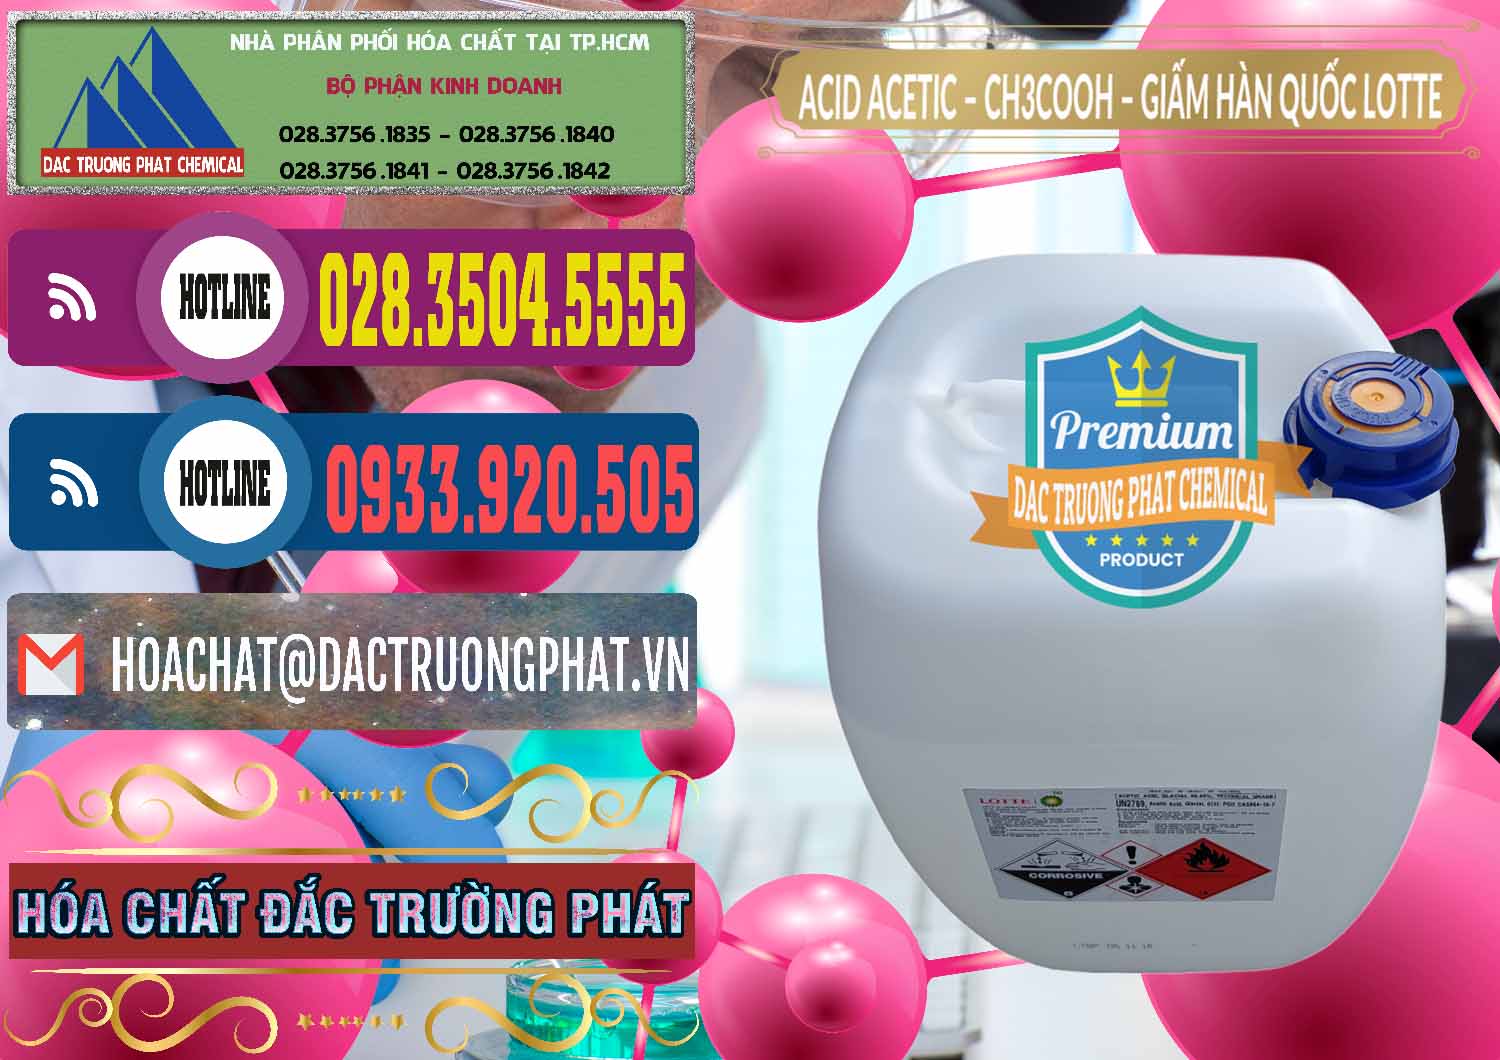 Chuyên bán - phân phối Acetic Acid – Axit Acetic Hàn Quốc Lotte Korea - 0002 - Nơi chuyên cung cấp - kinh doanh hóa chất tại TP.HCM - muabanhoachat.com.vn